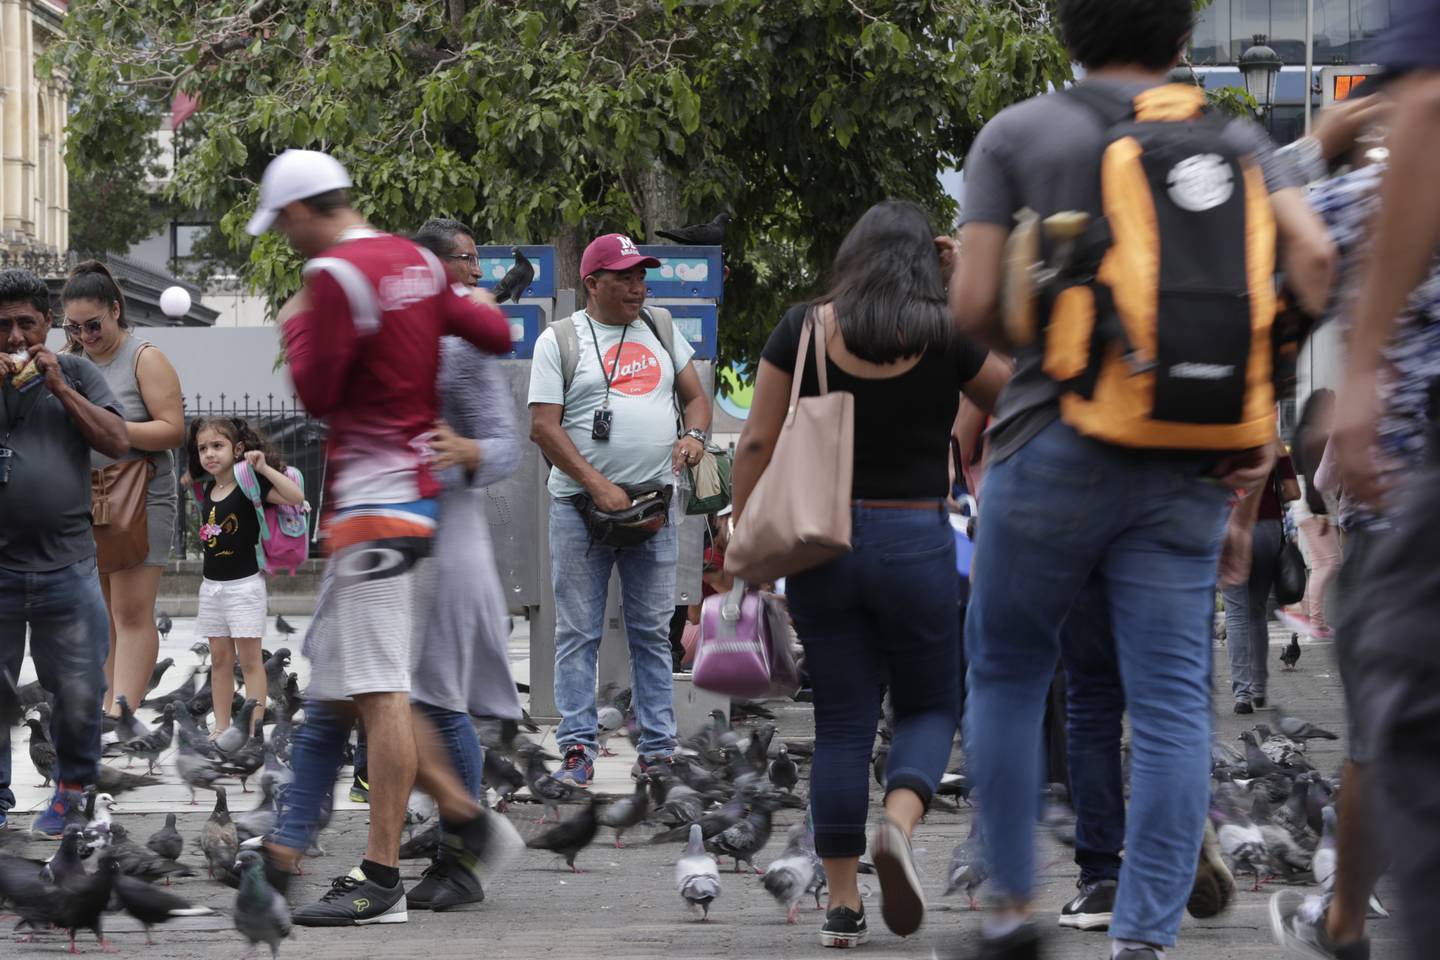 20/08/2019, San José, recorrido por el centro de San José para ver la cantidad de personas desempleadas, que se encuentran por las calles buscando trabajo. Fotografía José Cordero